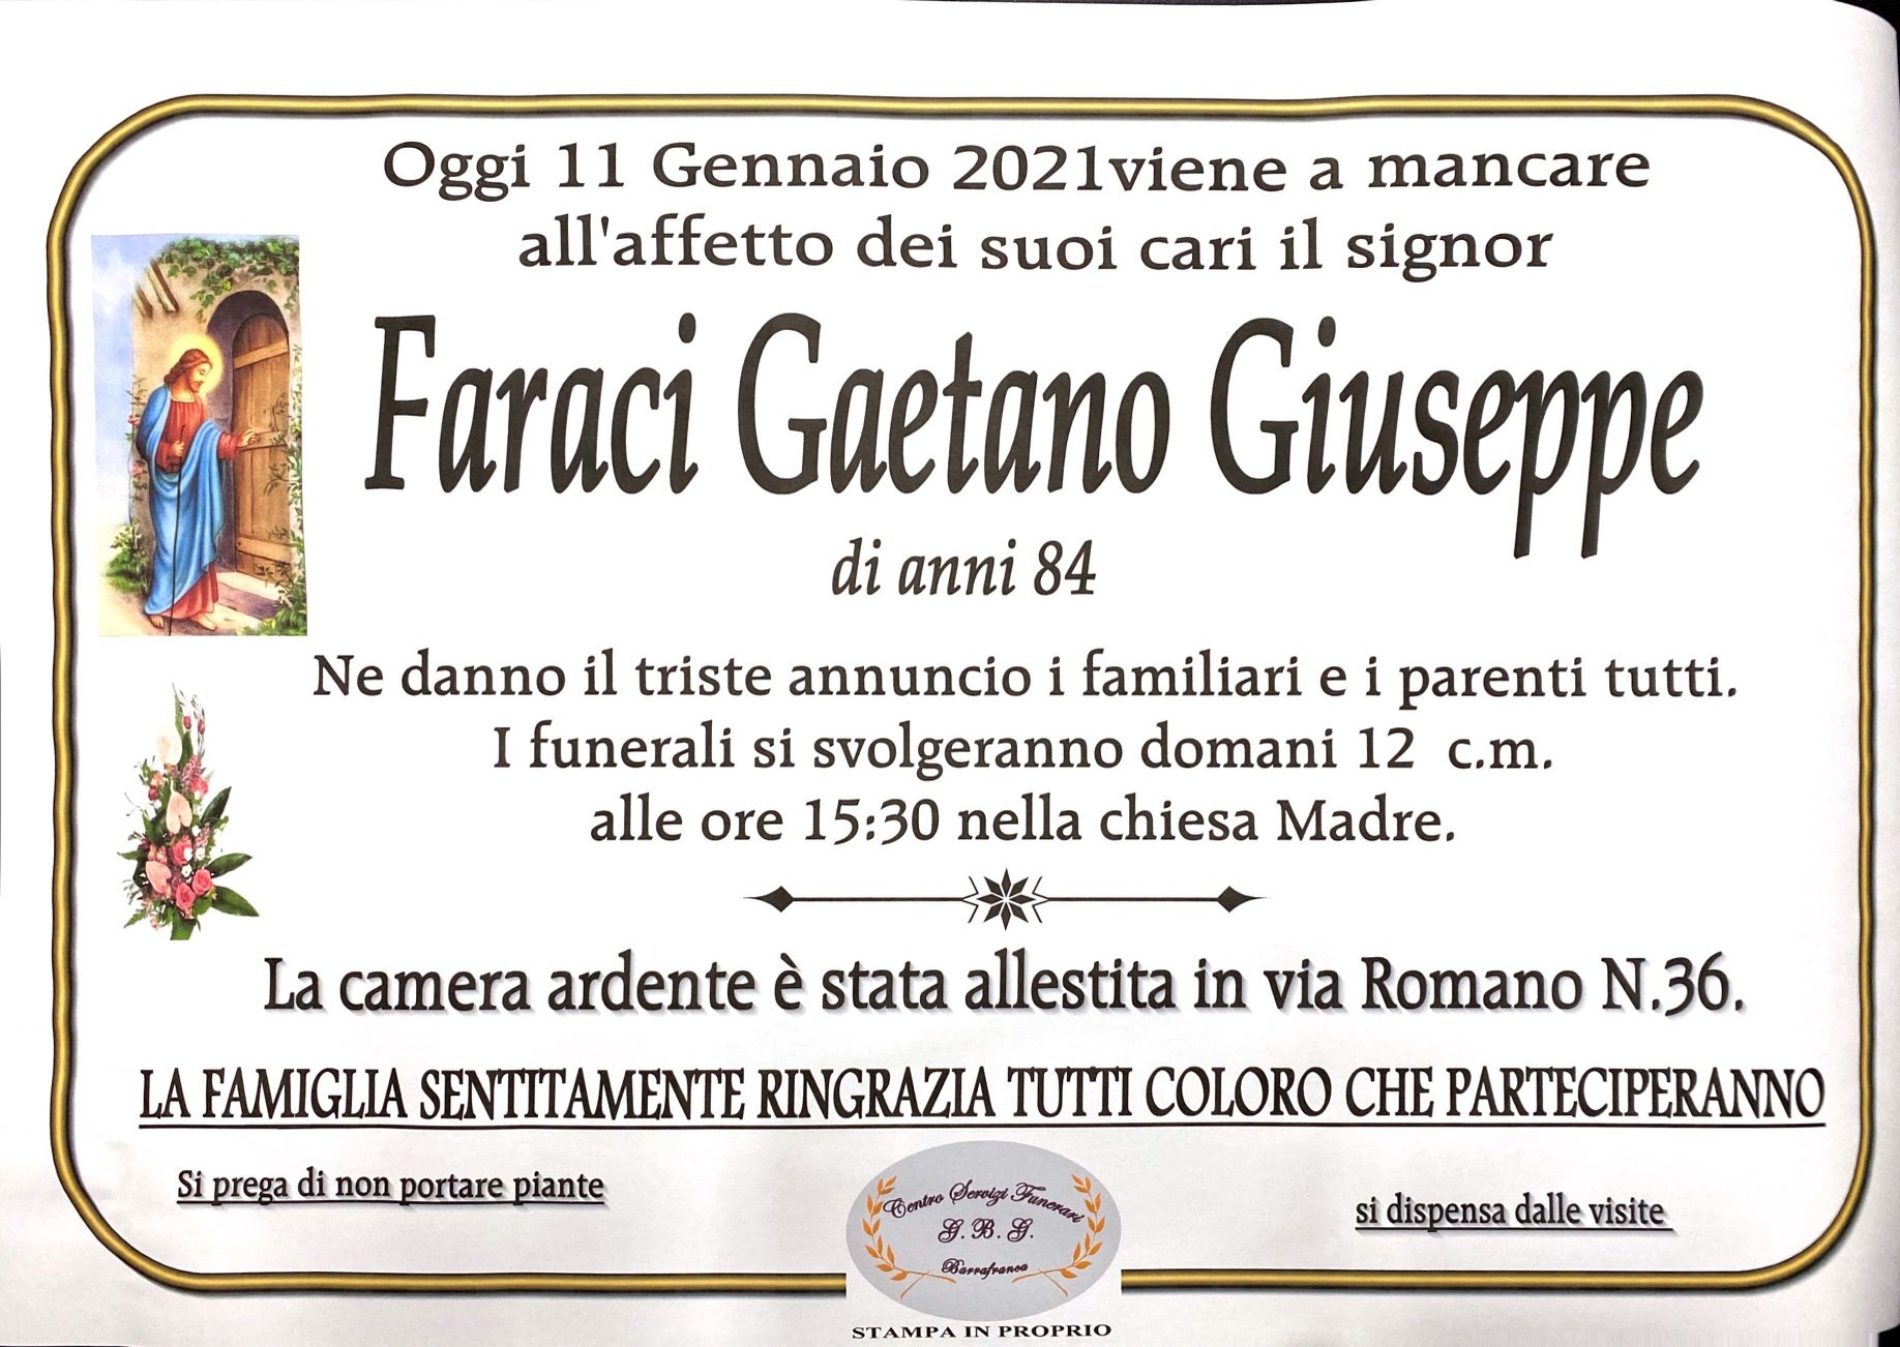 Annuncio servizi funerari agenzia G.B.G. sig. Faraci Gaetano Giuseppe di anni 84